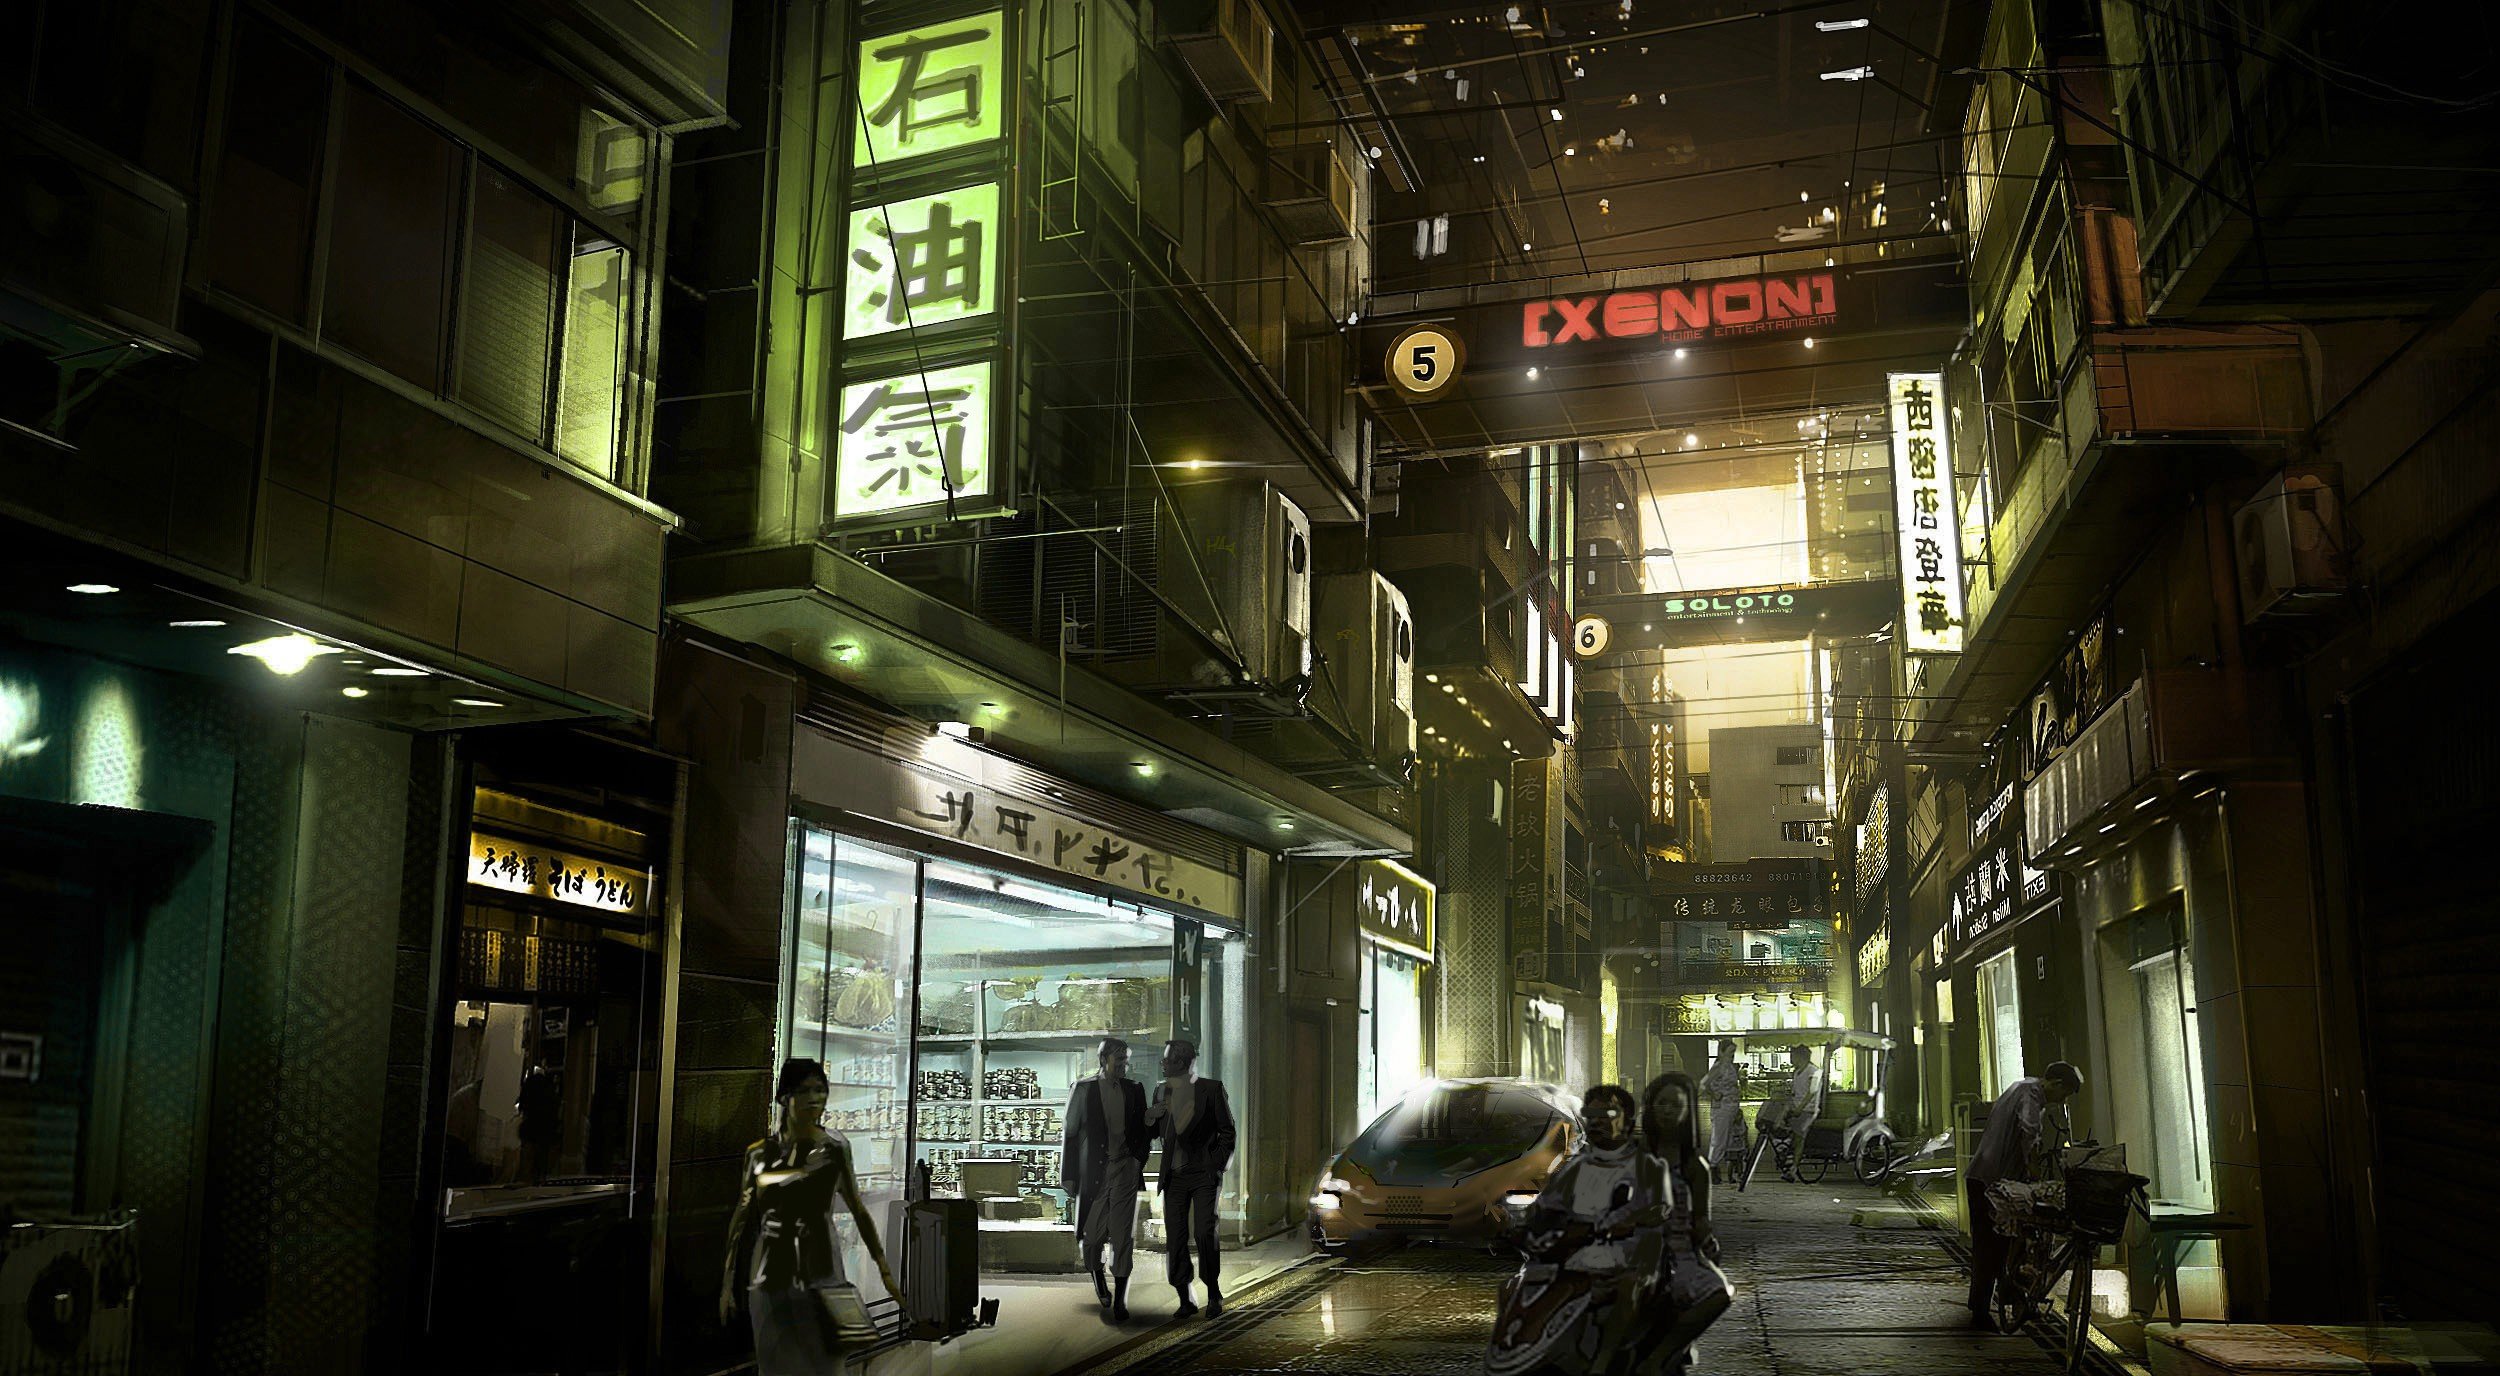 Deus Ex, Concept art, Signs, City, Futuristic, Street Wallpaper